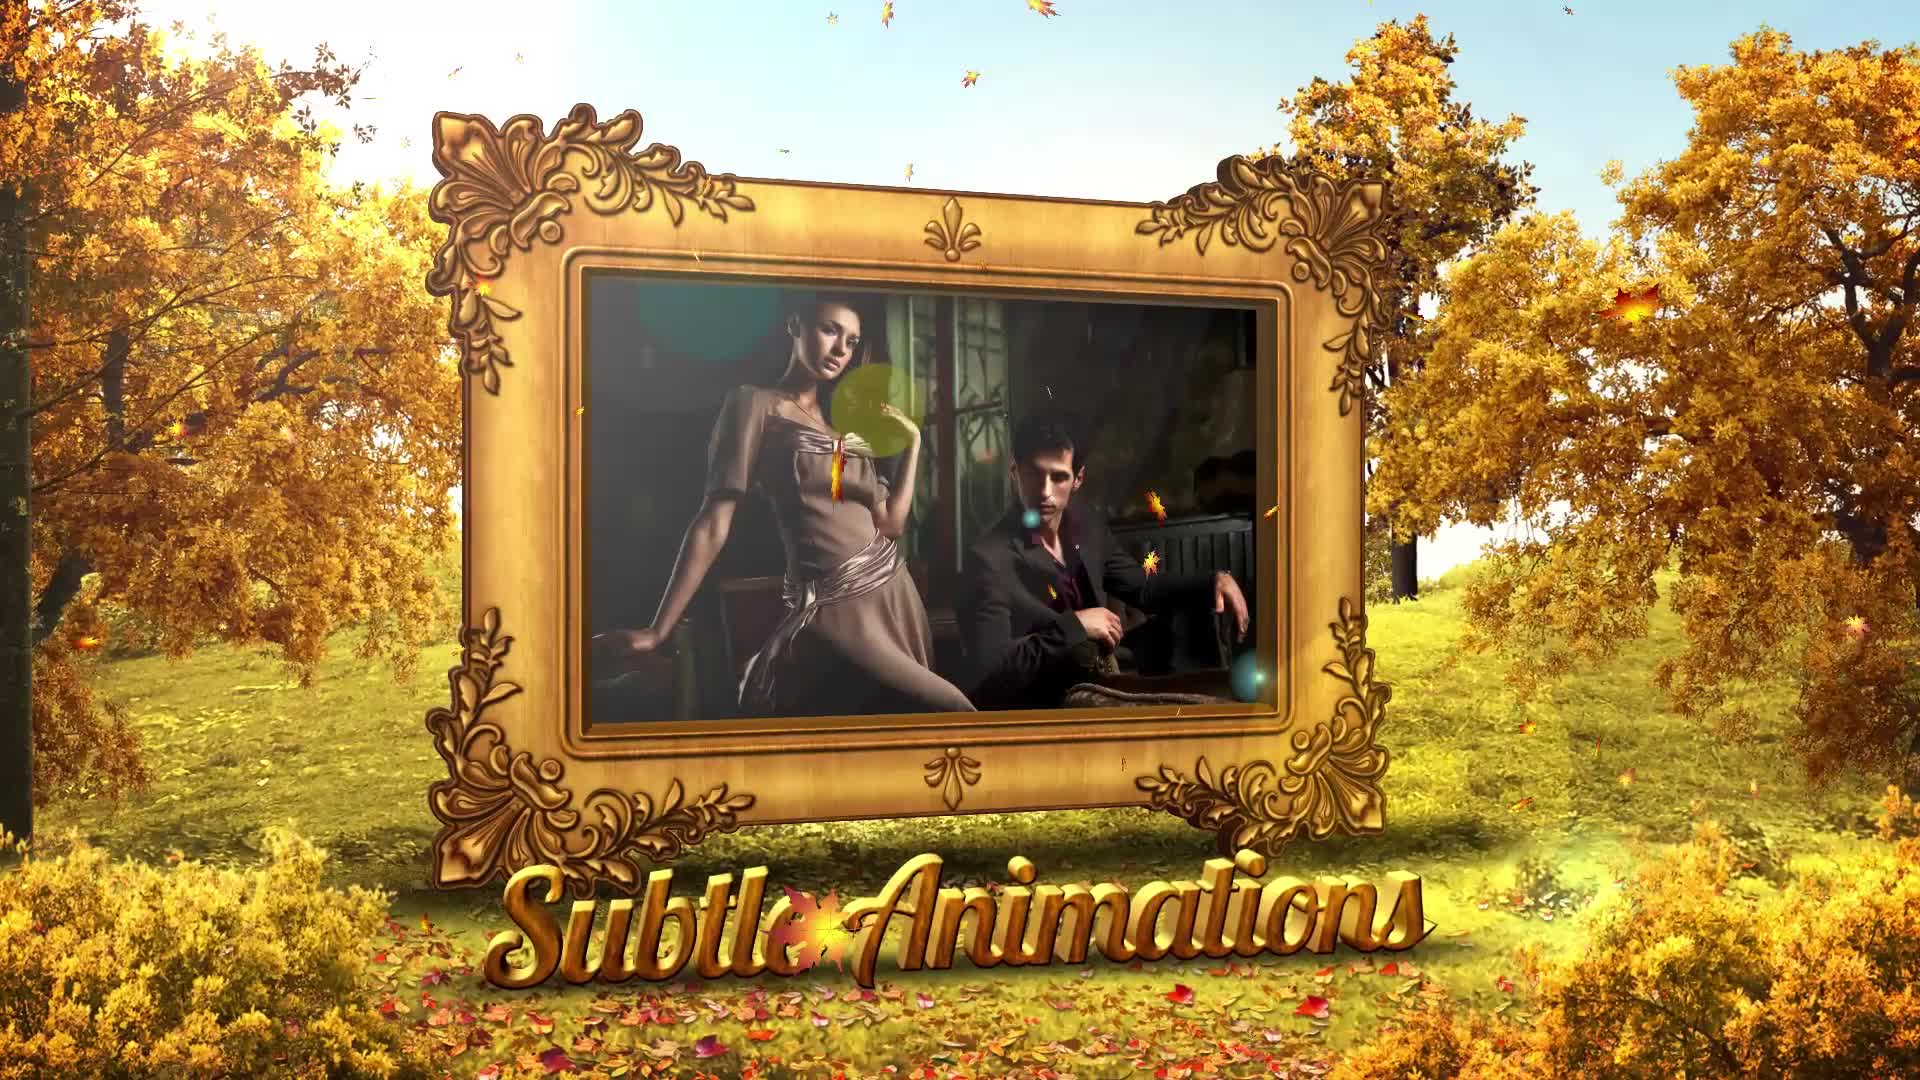 Autumn Special Promo Premiere Pro Videohive 28672317 Premiere Pro Image 9